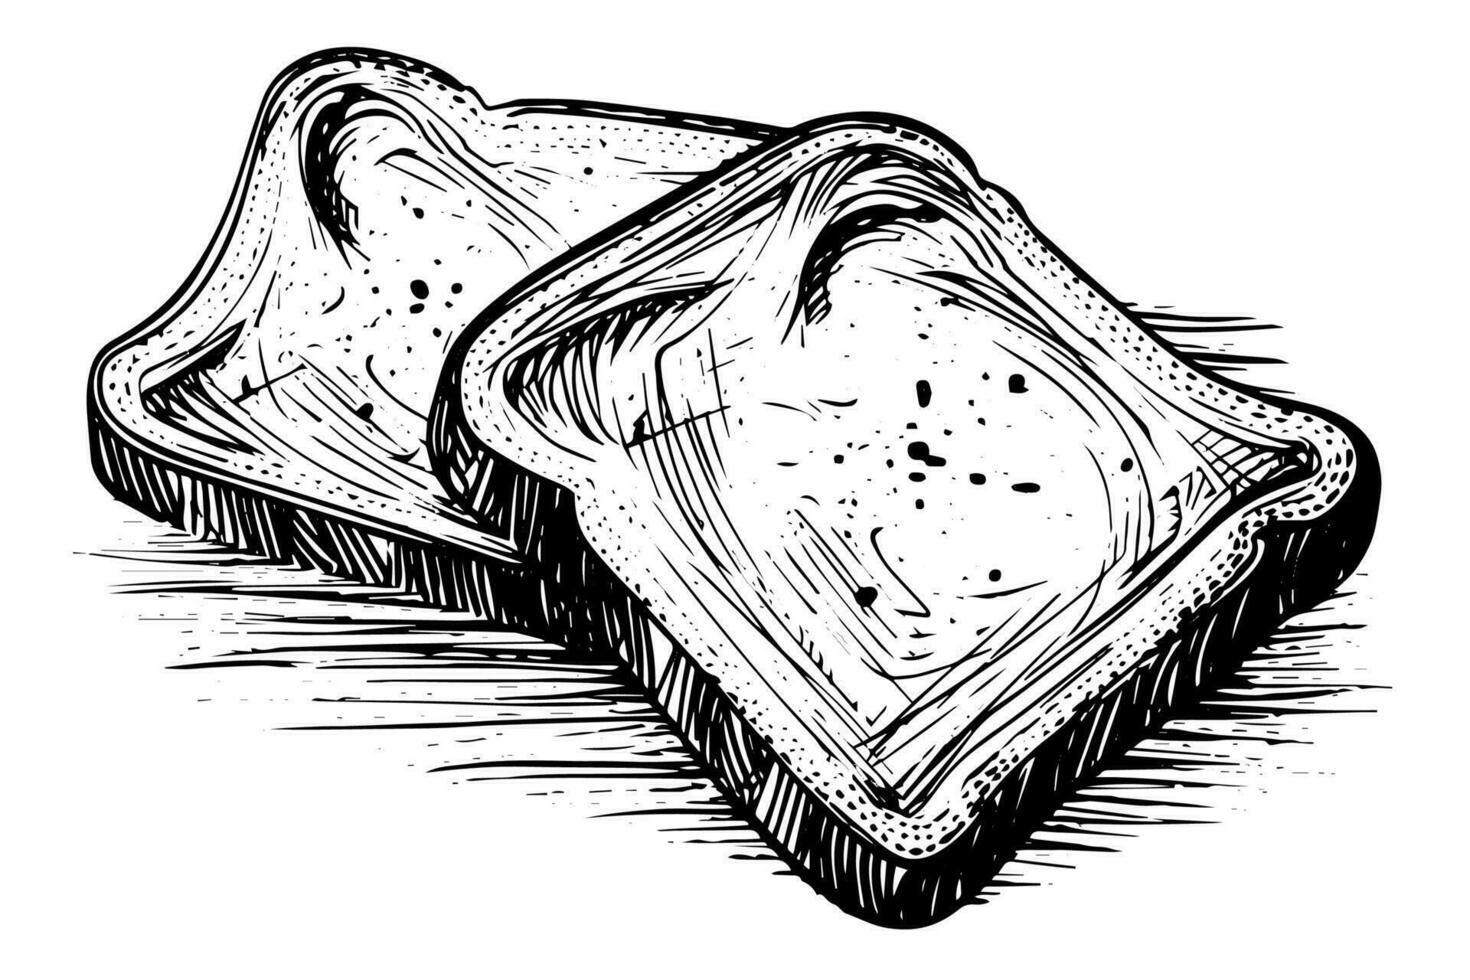 geroosterd brood plakjes schetsen. brood gravure in hand- getrokken stijl vector illustratie.